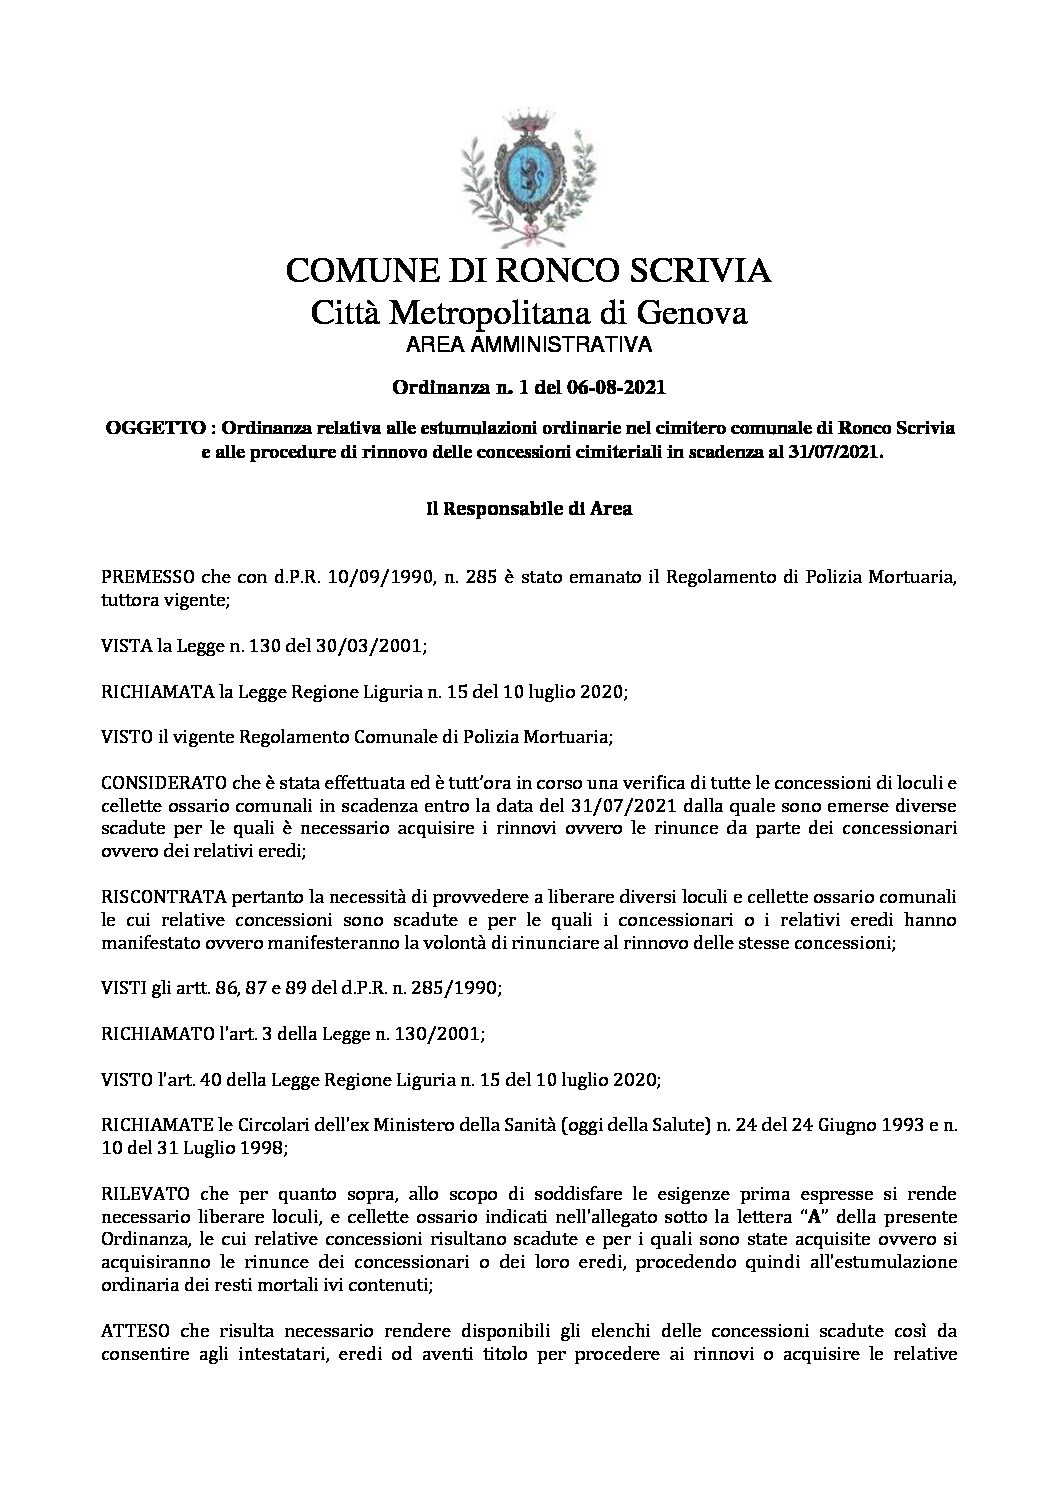 Ordinanza relativa alle estumulazioni ordinarie nel cimitero comunale di Ronco Scrivia e alle procedure di rinnovo delle concessioni cimiteriali in scadenza al 31/07/2021.